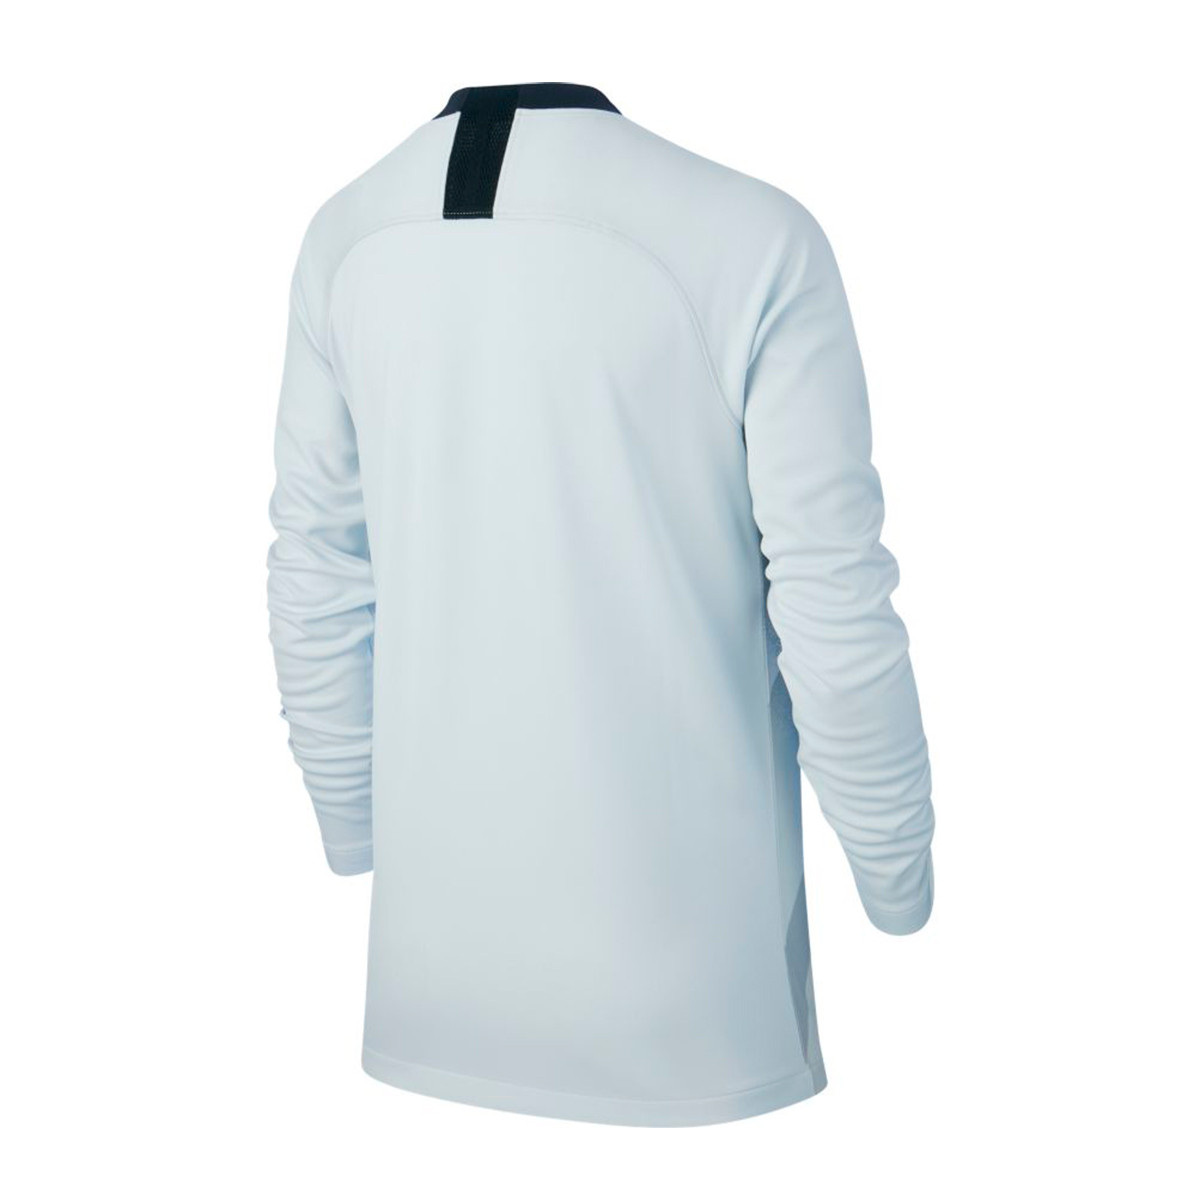 chelsea goalkeeper jersey 2019